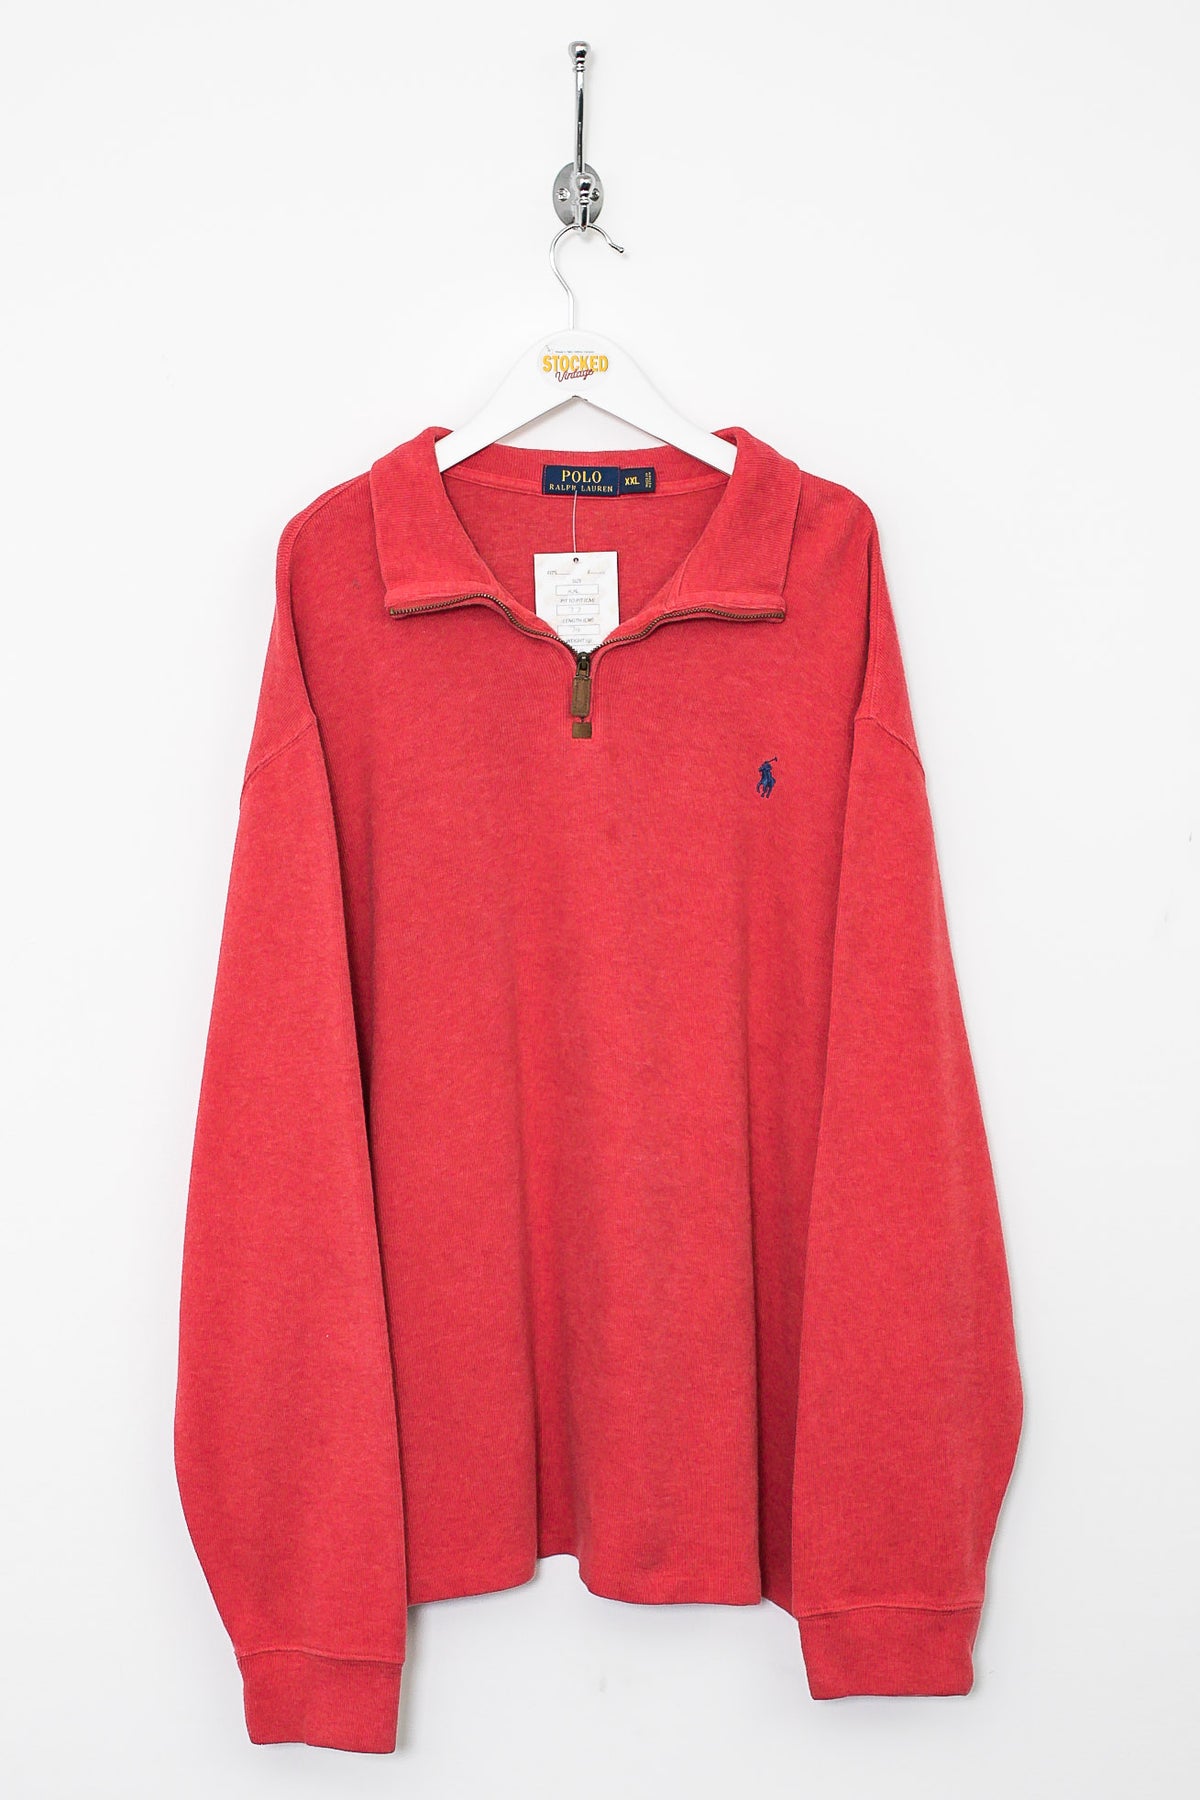 Ralph Lauren 1/4 Zip Sweatshirt (XXL)